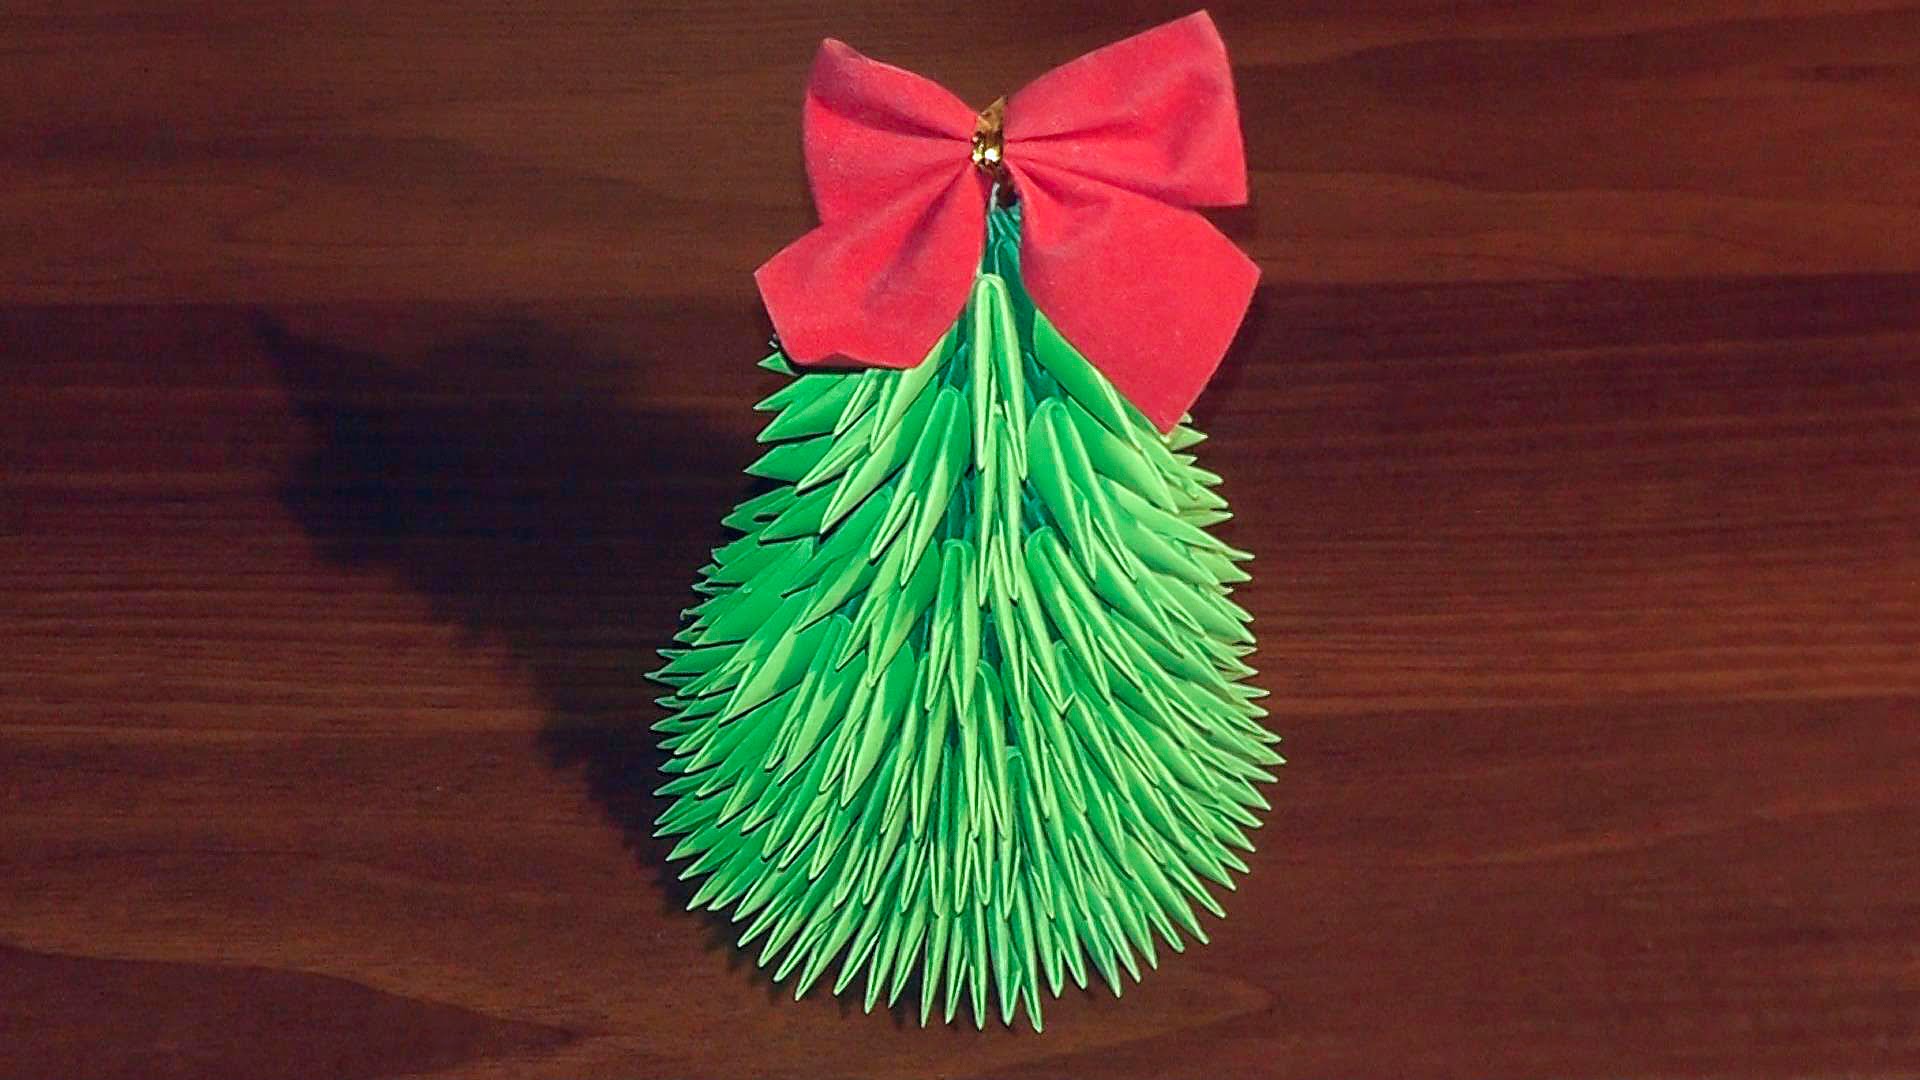 optie om zelf een lichte kerstboom van papier te maken